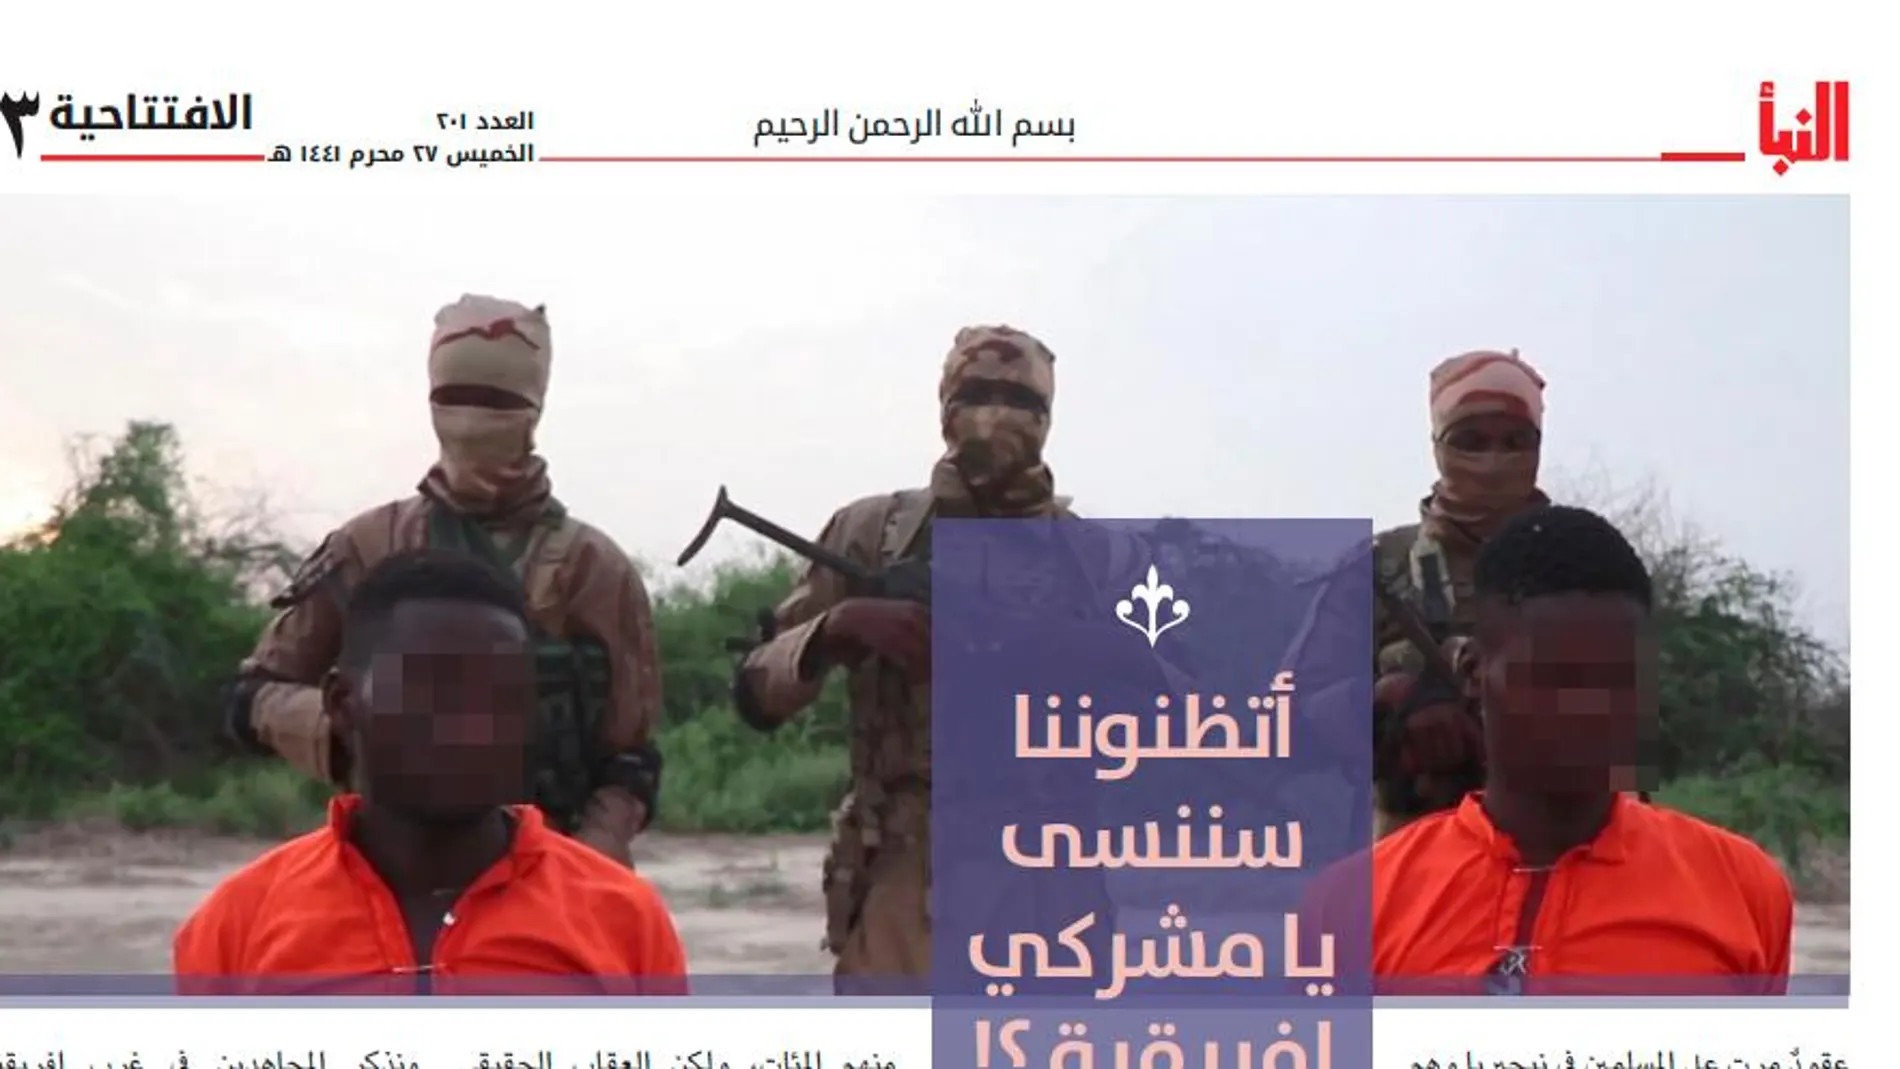 Los yihadistas publican la fotografía de dos cristianos momentos antes de ser asesinados